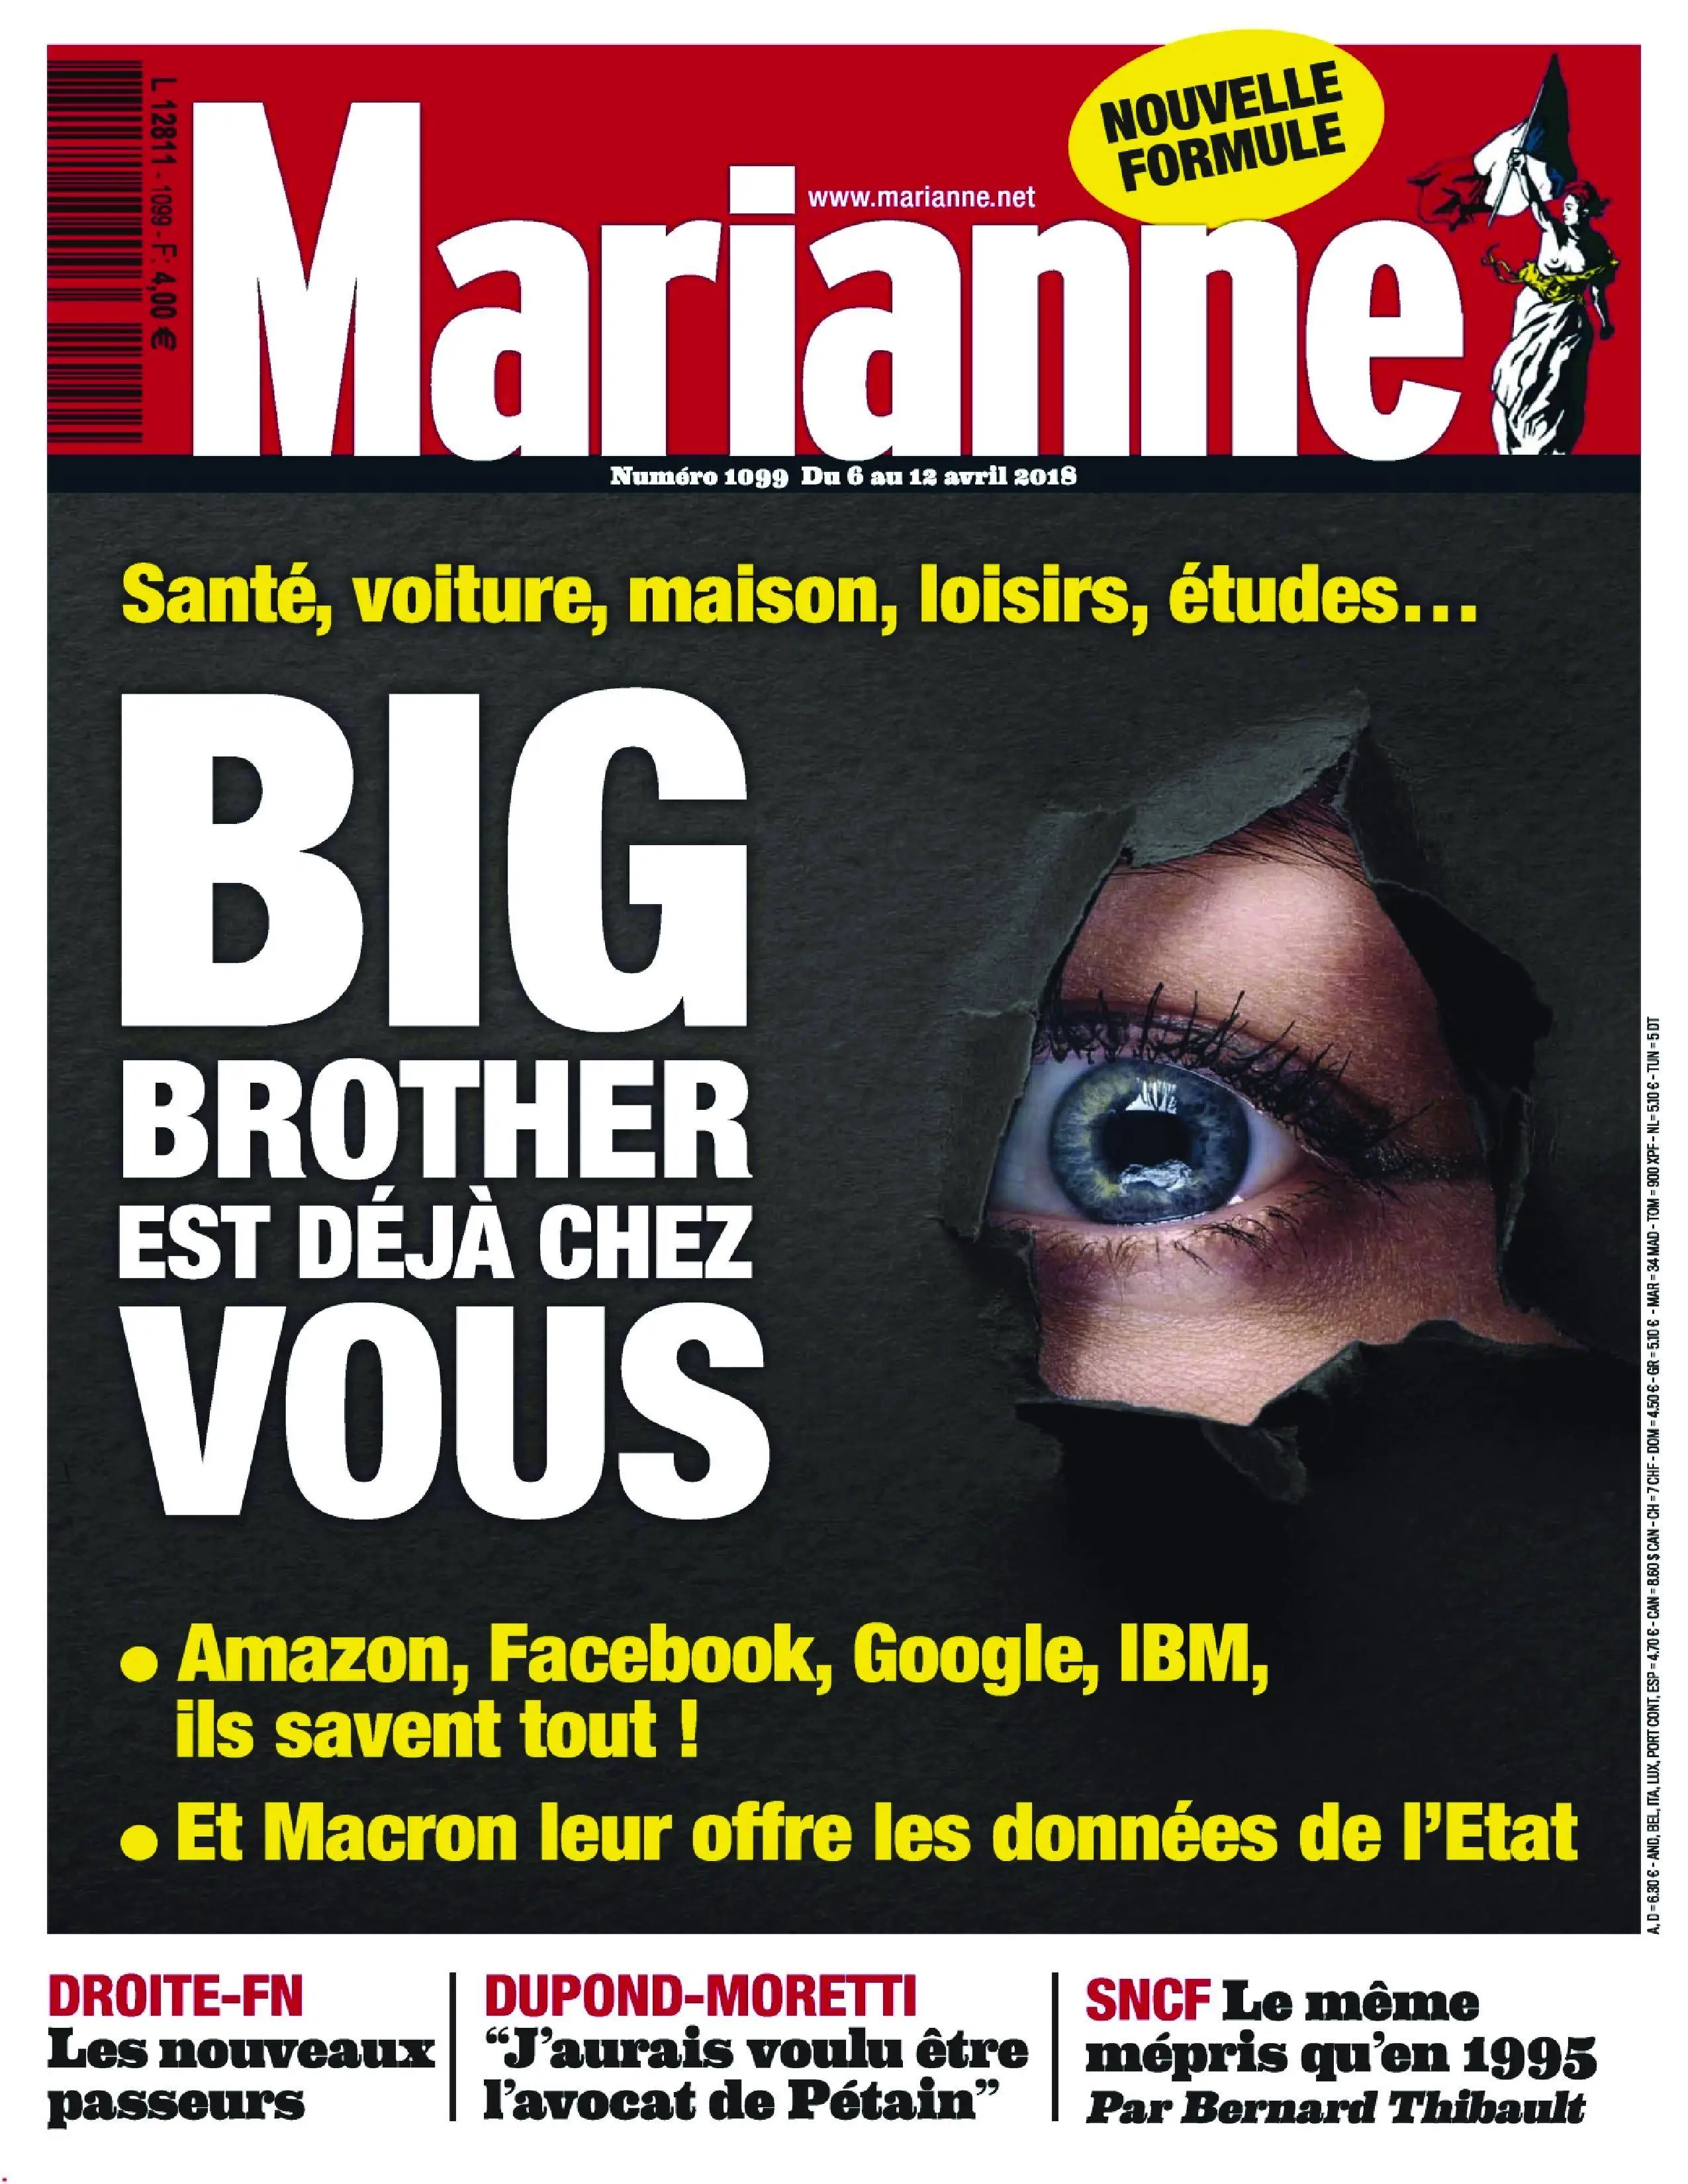 Form magazine. Marianne 5.